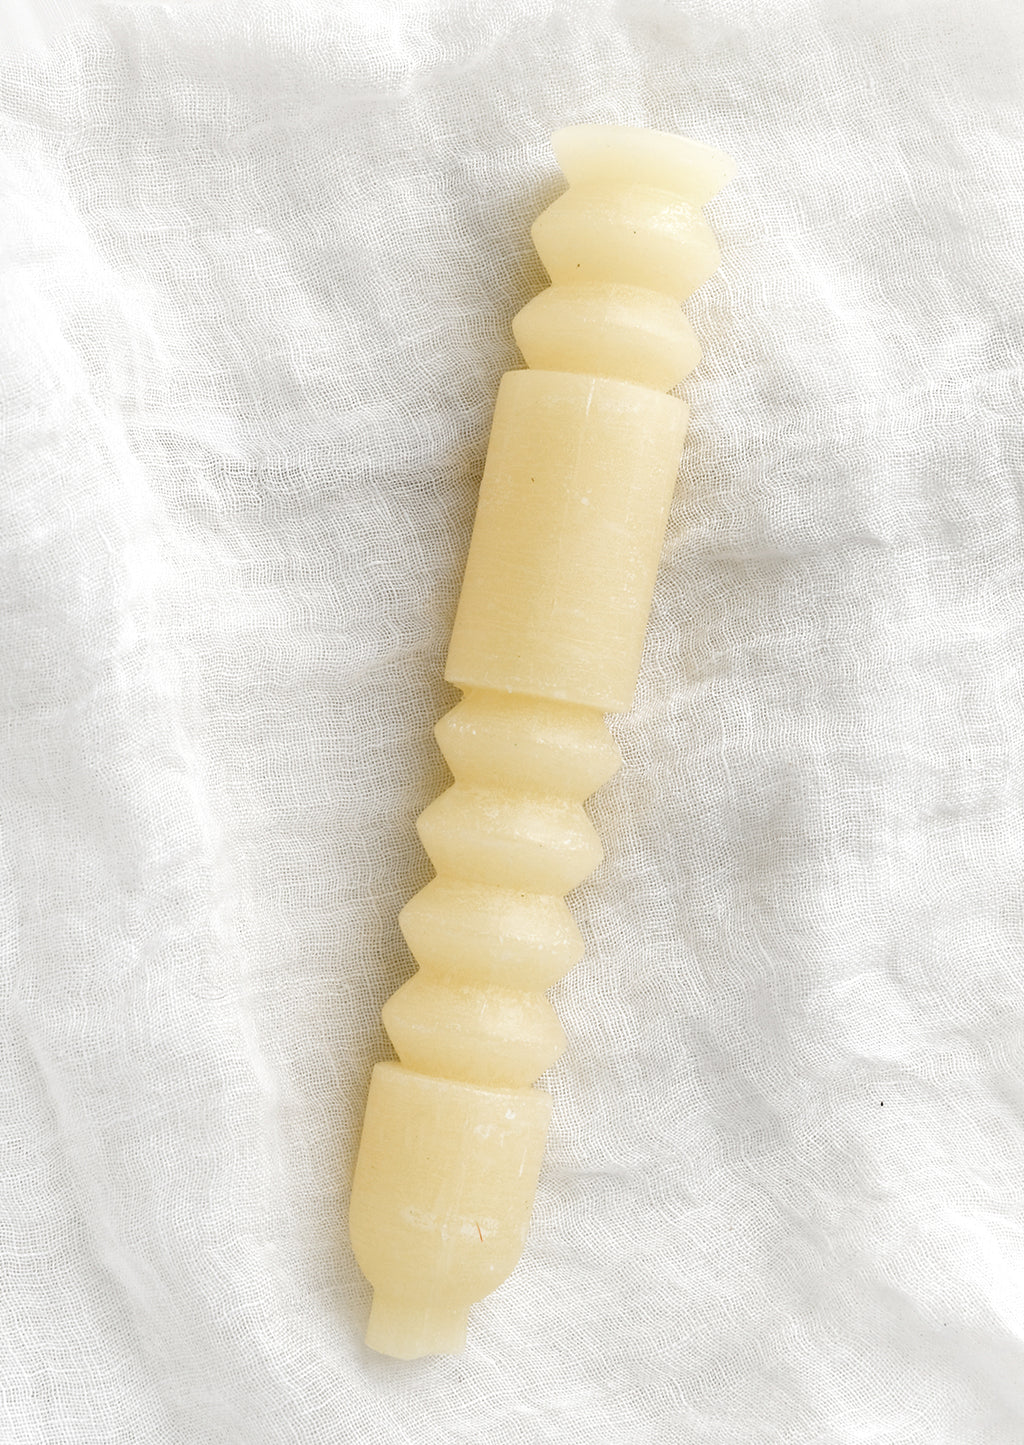 Vanilla: A geometric shape taper candle in vanilla (off white).